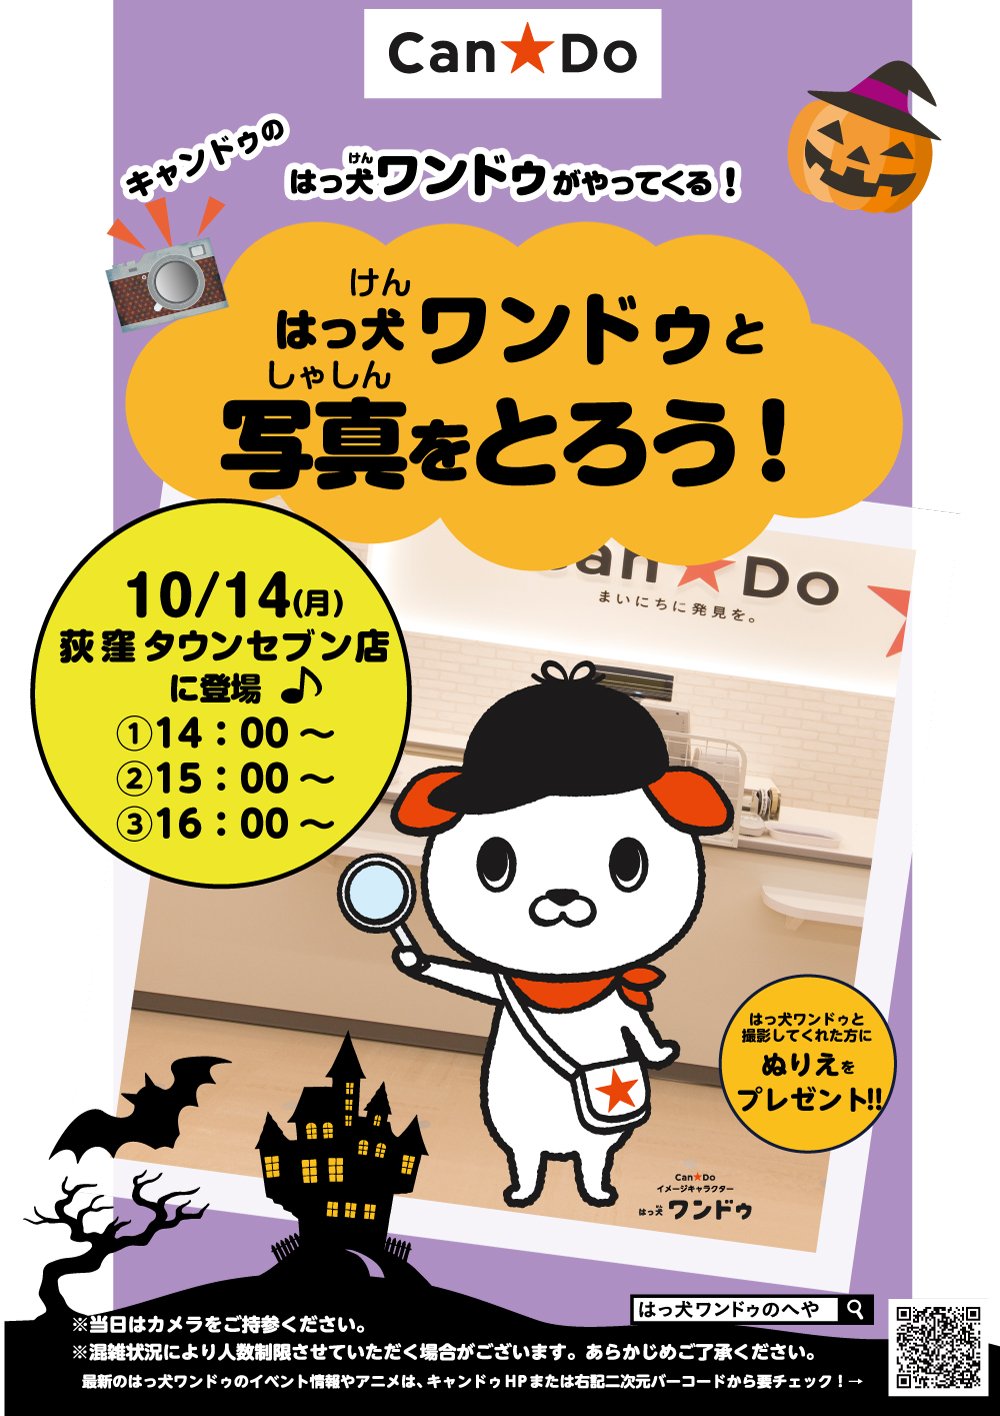 Can Do キャンドゥ イベント情報 10月14日 月 荻窪タウンセブン店に はっ犬ワンドゥ がやってくる たくさんの人にお会い出来るのを はっ犬ワンドゥも楽しみにしています 皆様のご来店を心よりお待ちしております 地図 T Co